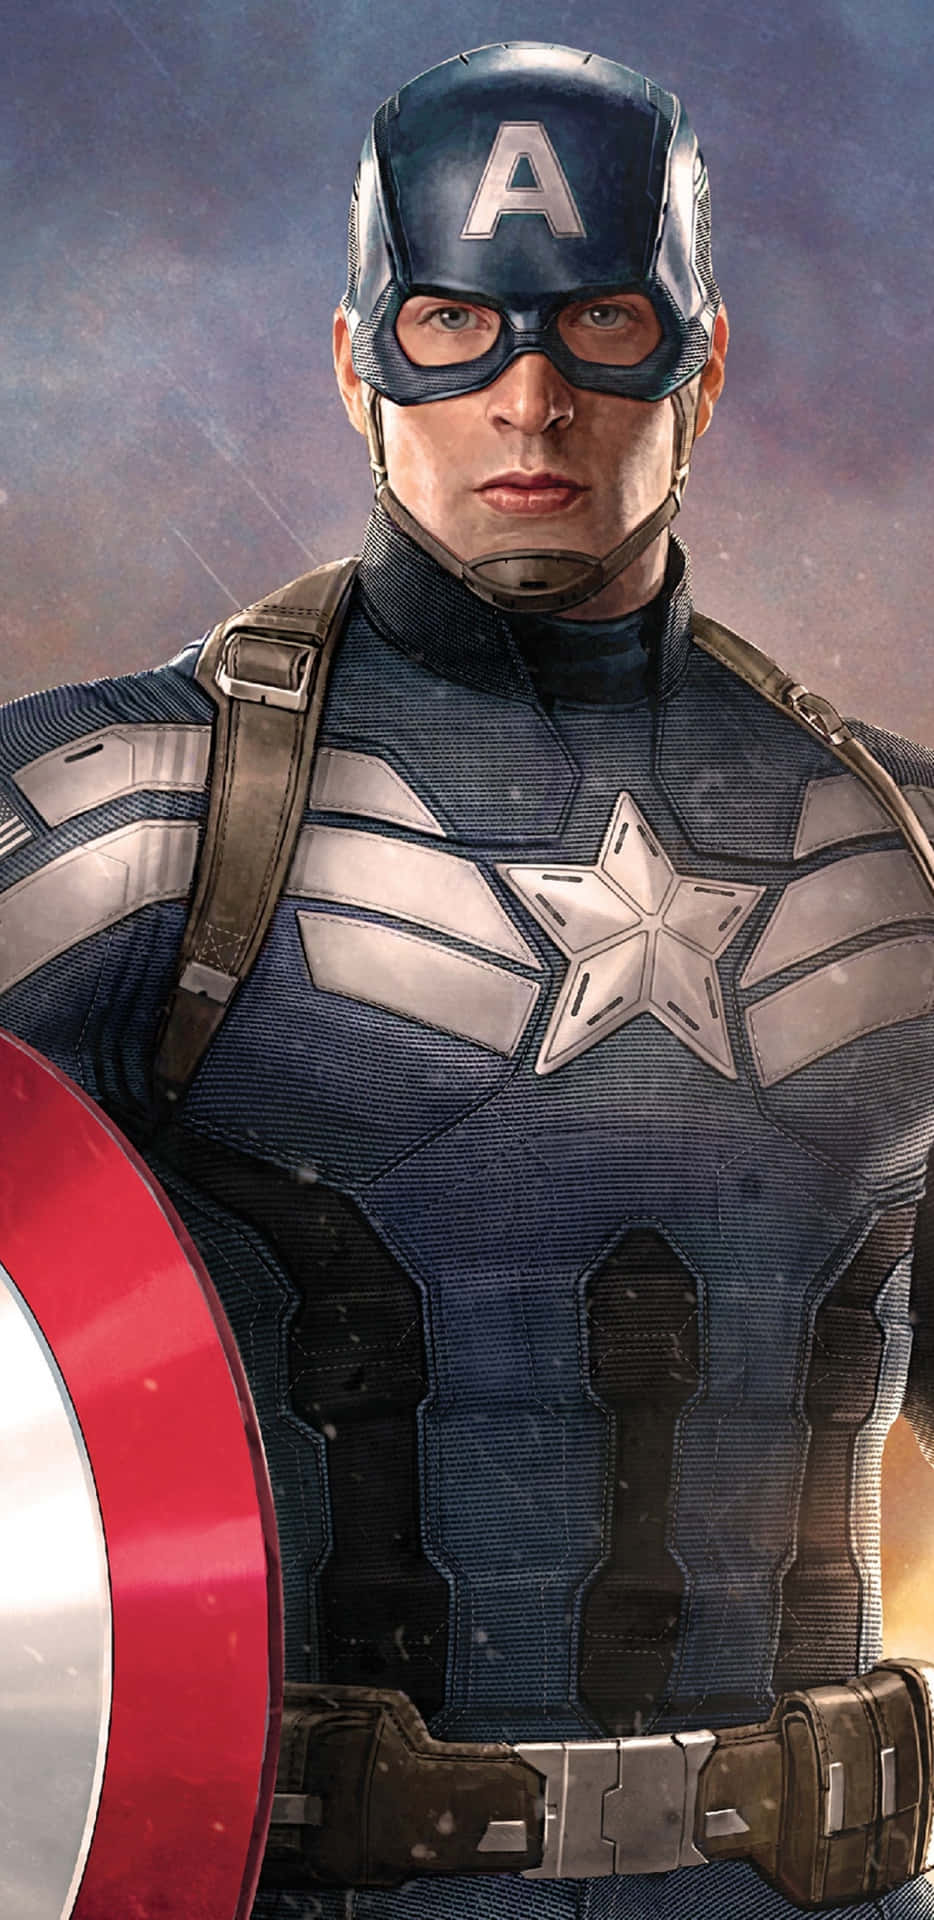 Pixel3xl Bakgrund Med Captain America Från The Winter Soldier.